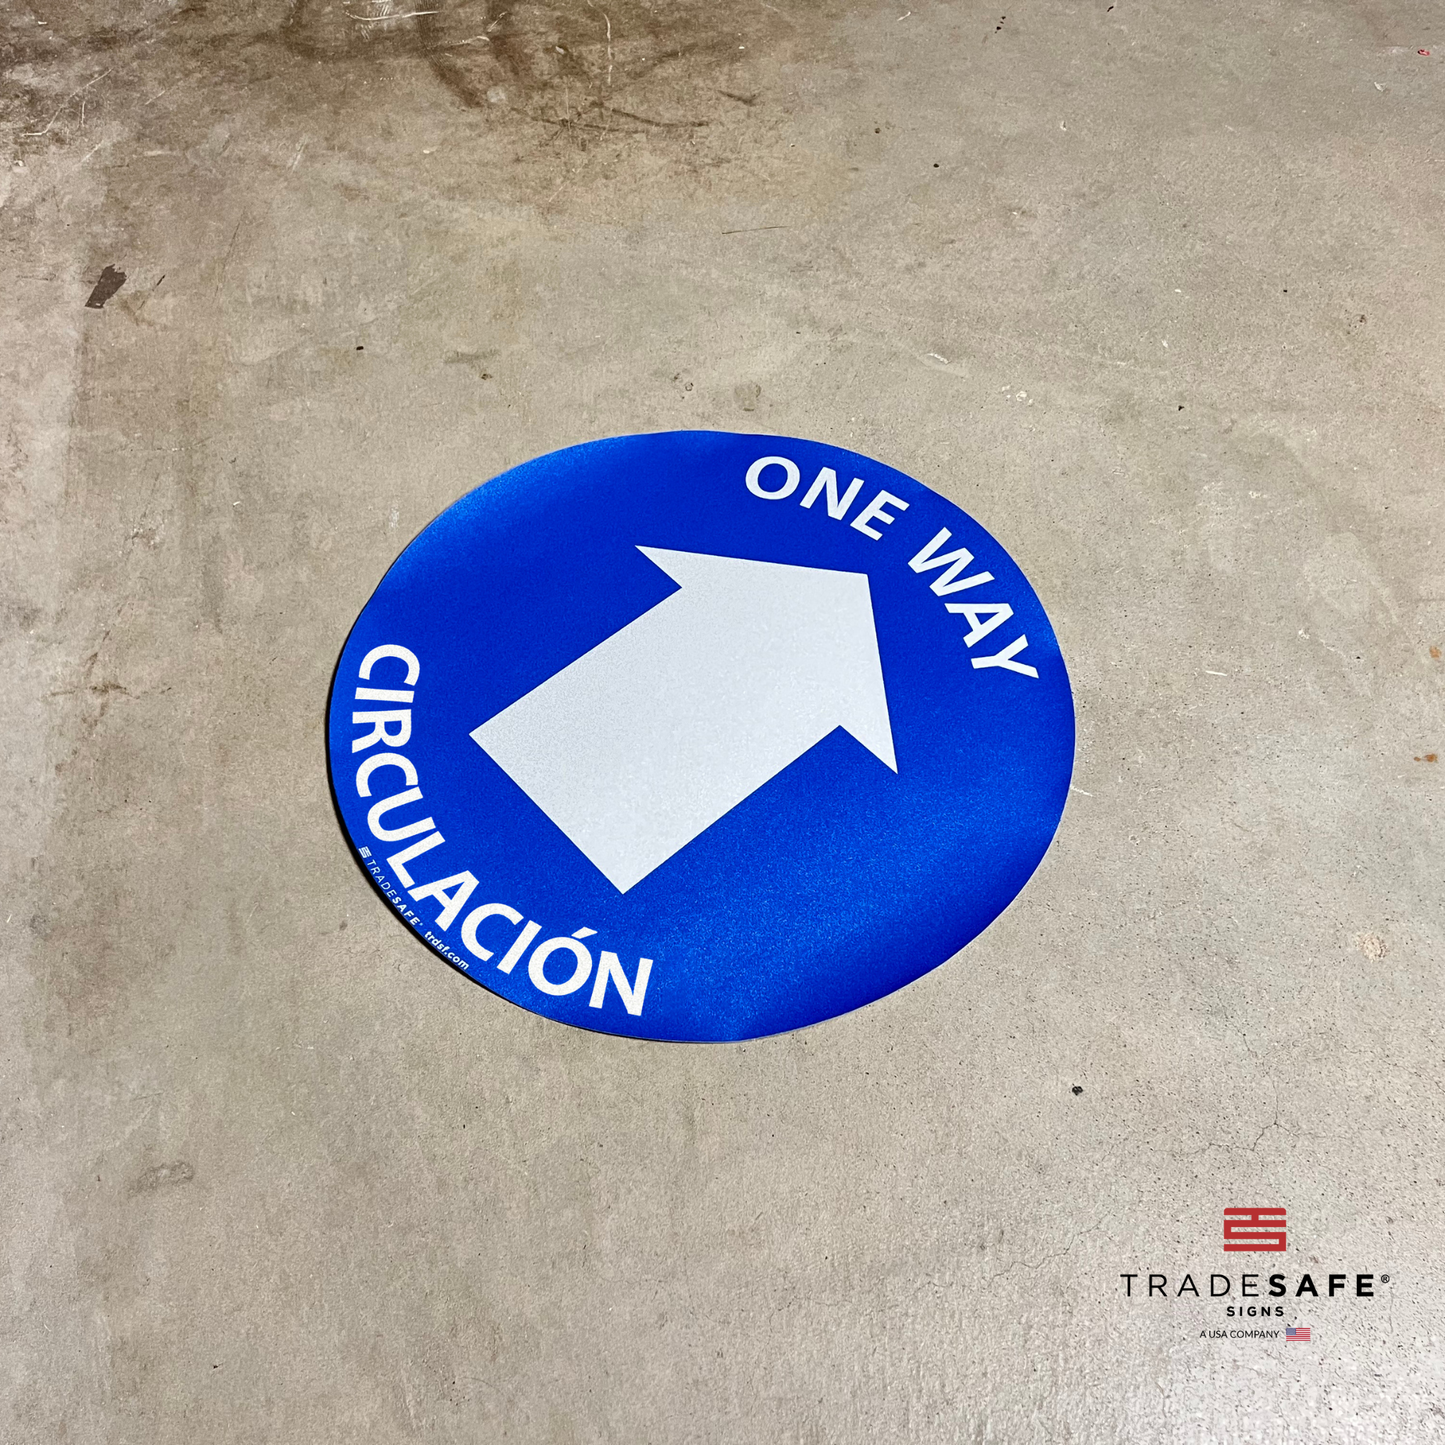 one way circulación sign on floor